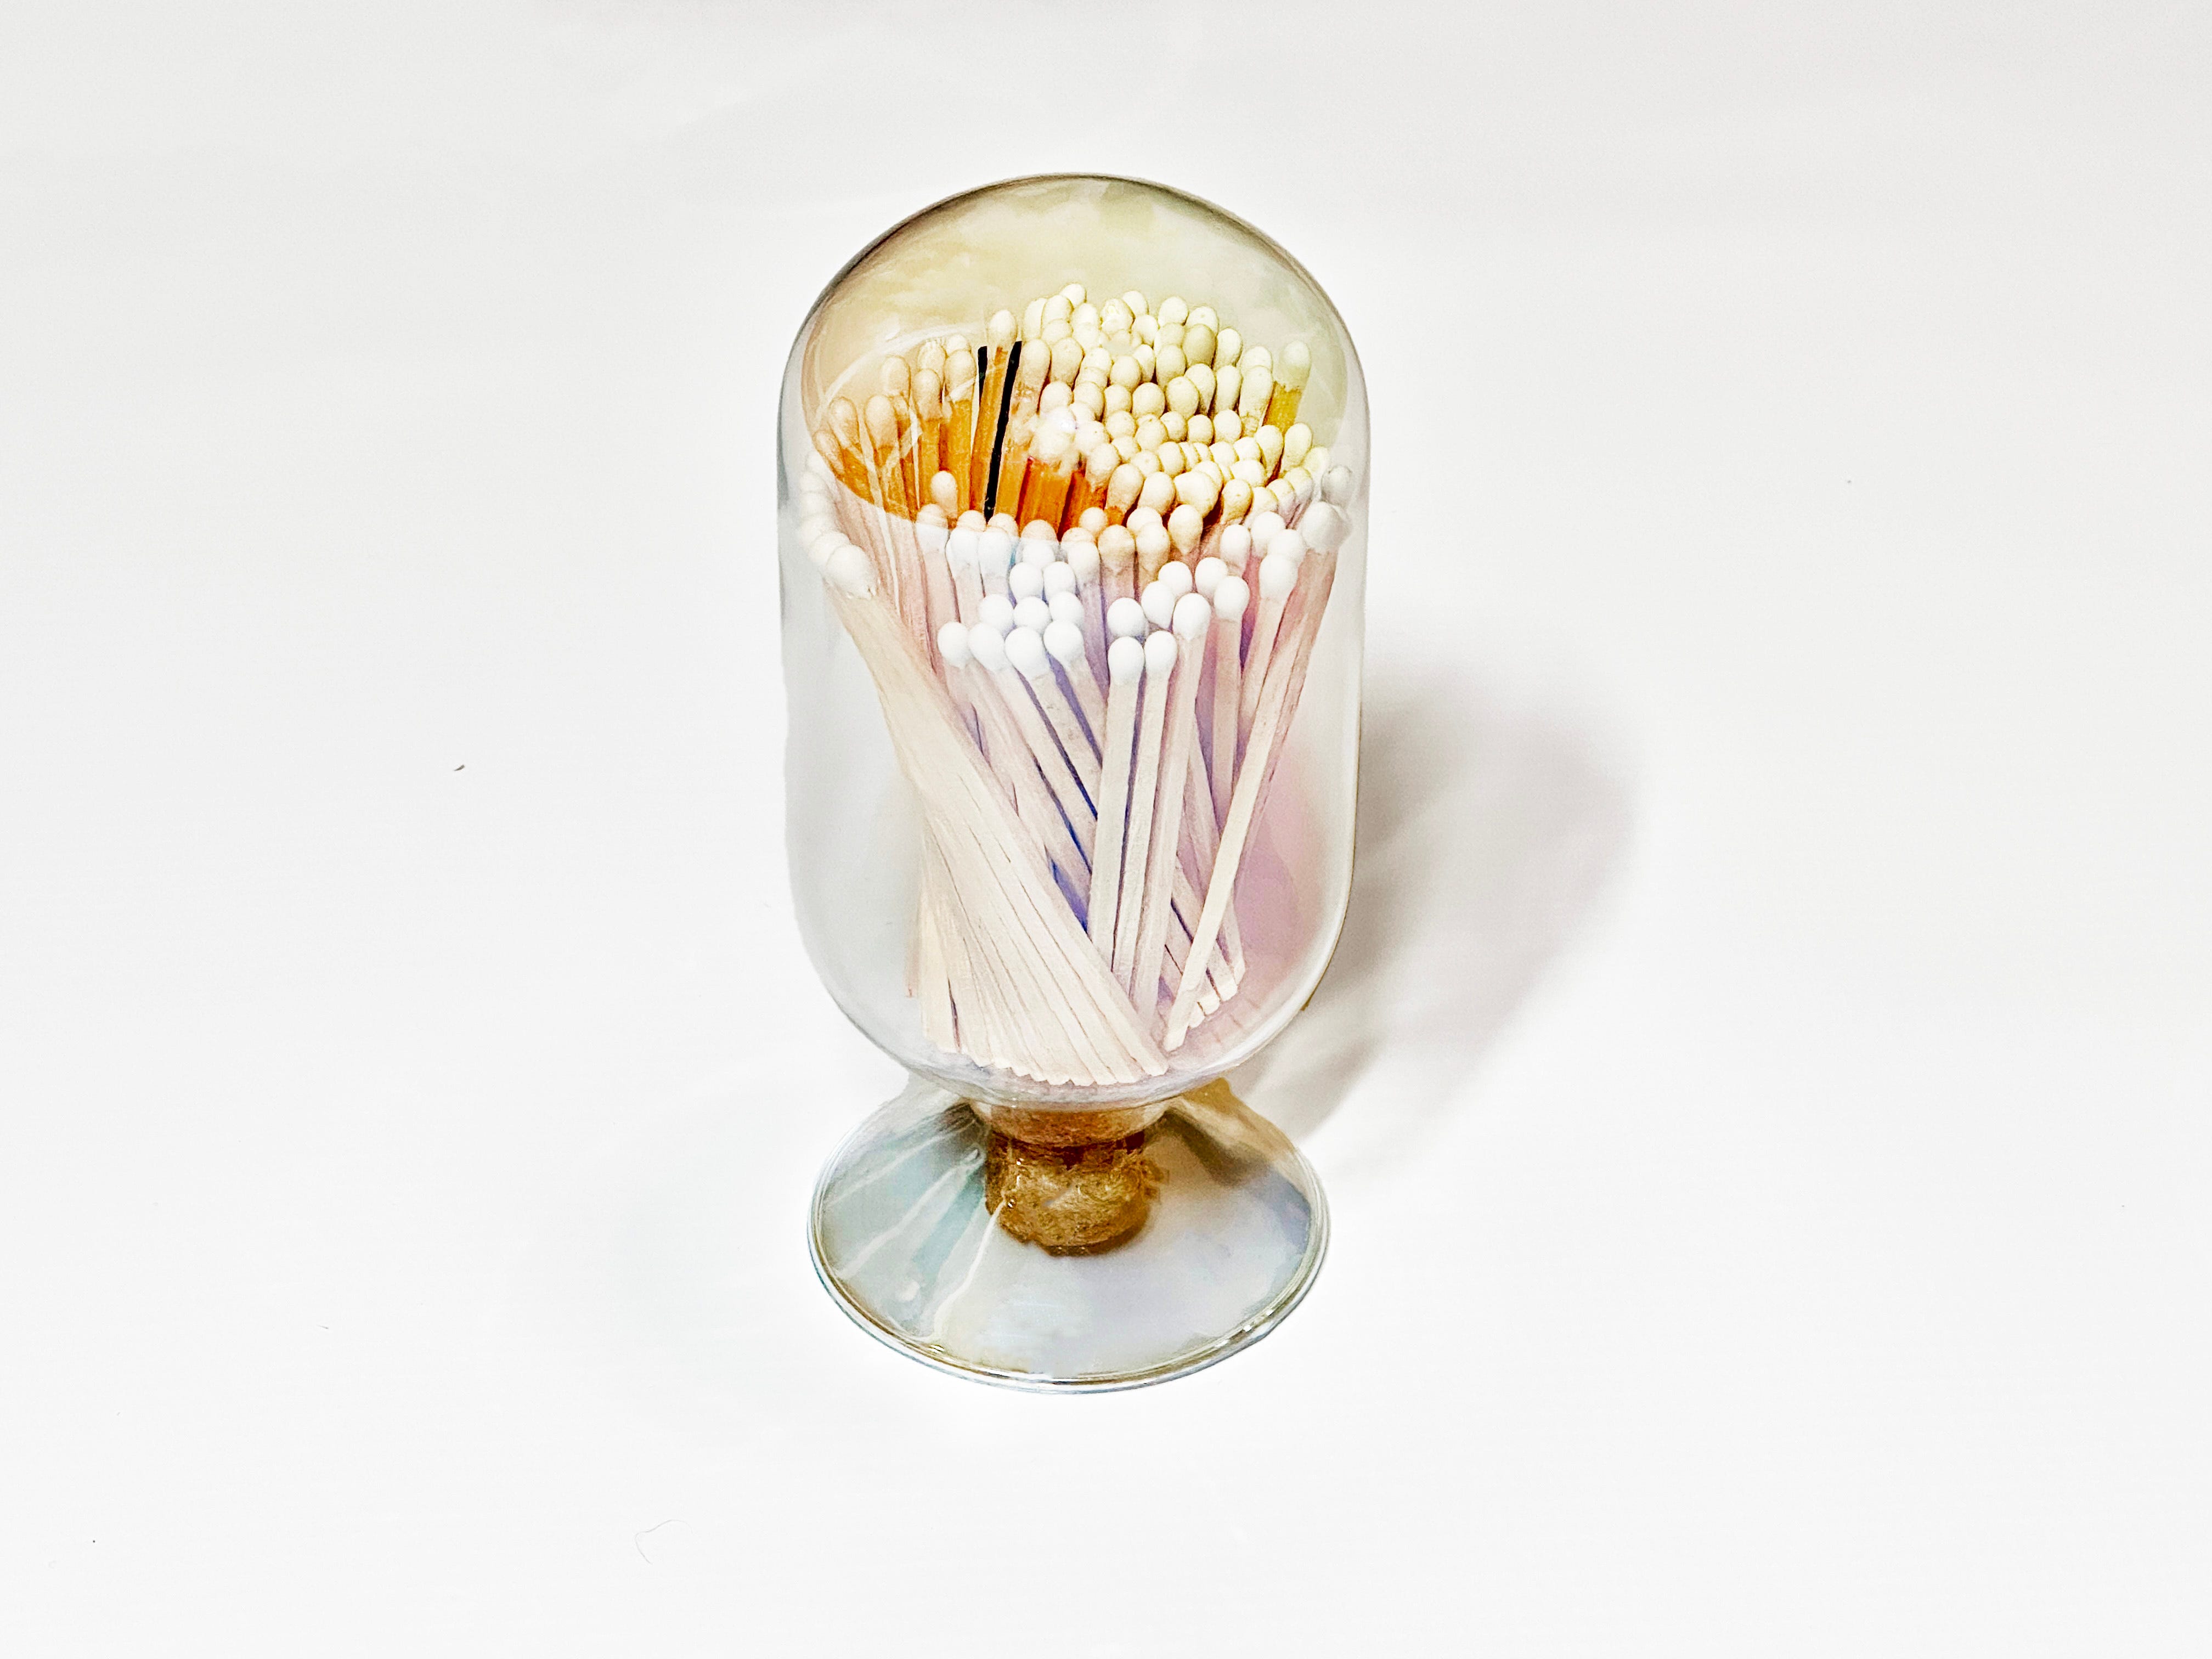 Eine dekorative Glocke aus durchsichtigem Glas hält Streichhölzer.  Die Cloche ist auf einem einfarbig weißen Hintergrund platziert